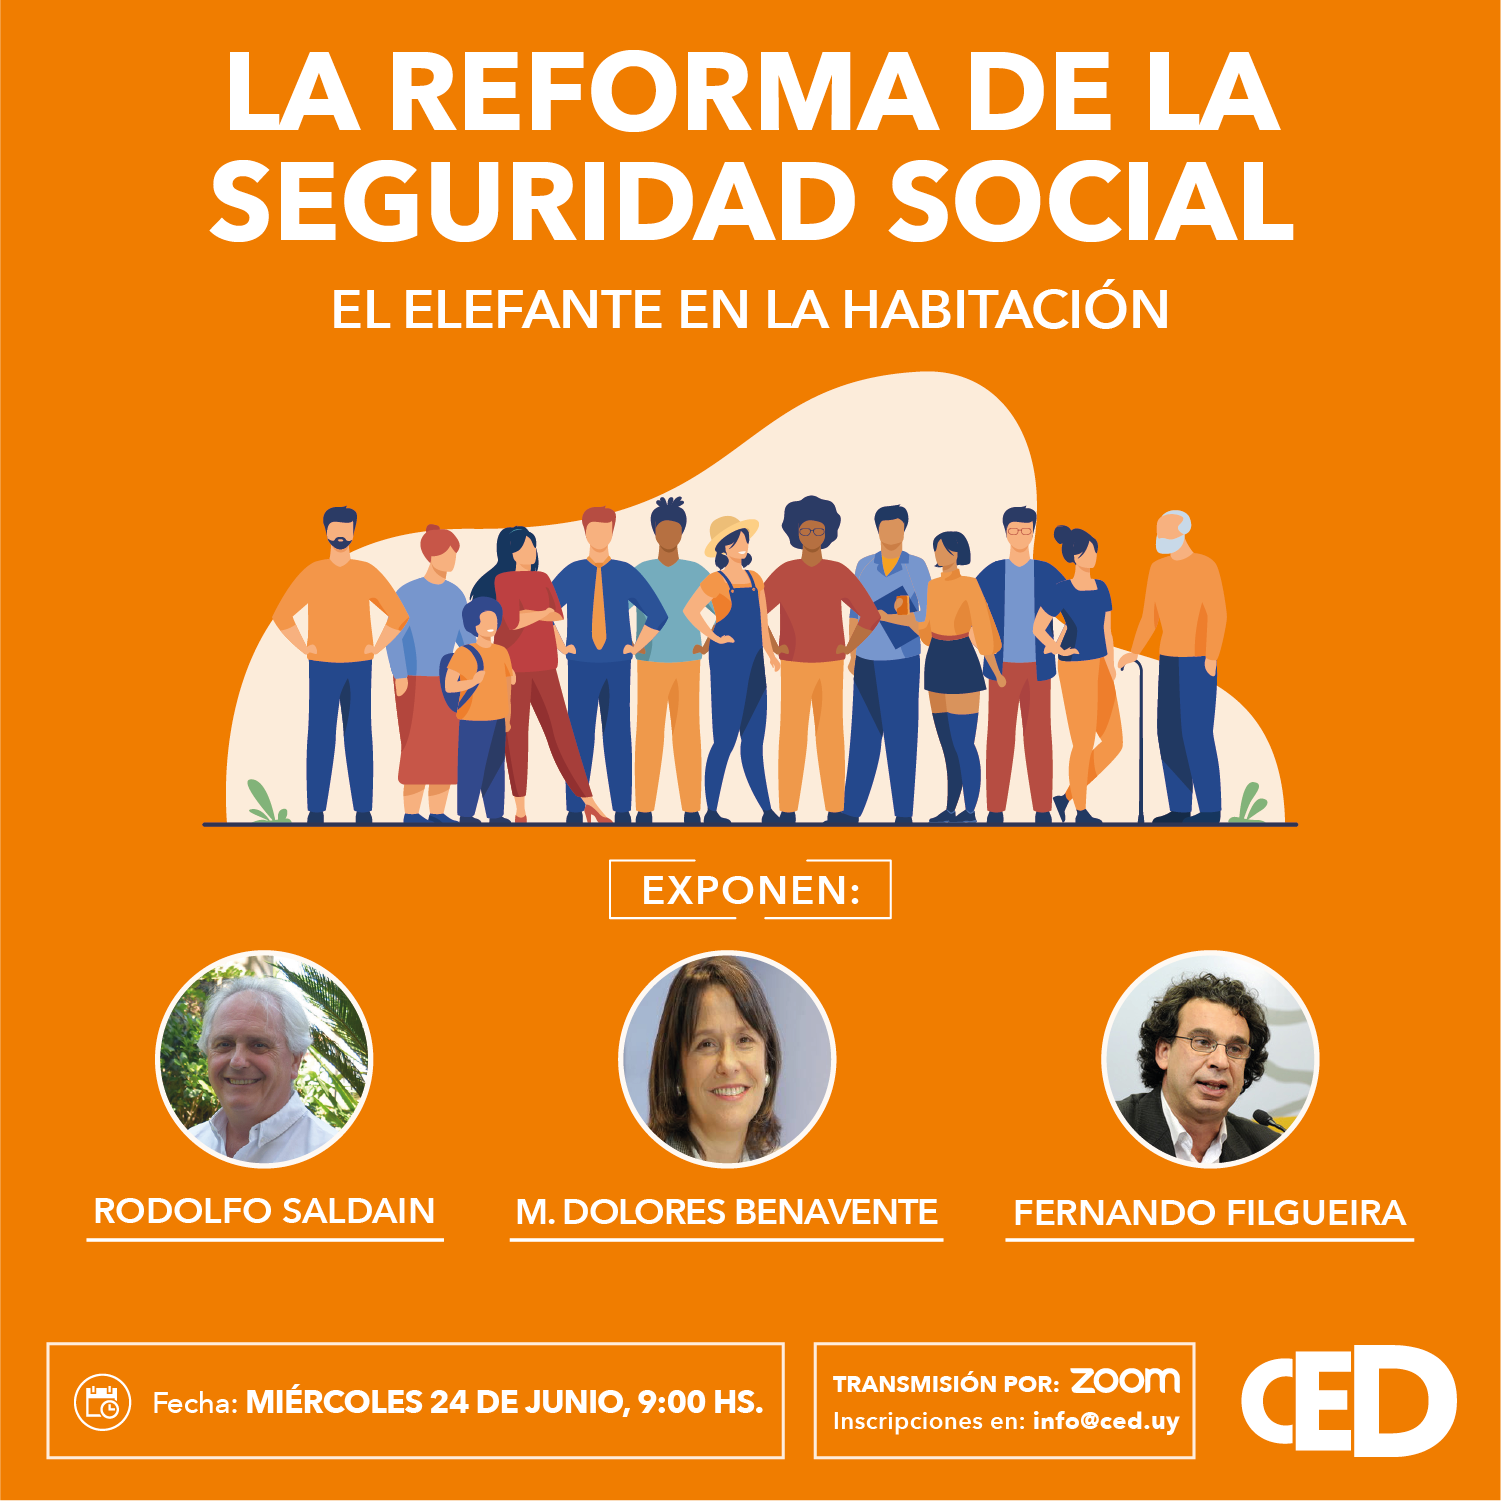 CED invita al Coloquio “La reforma de la seguridad social”